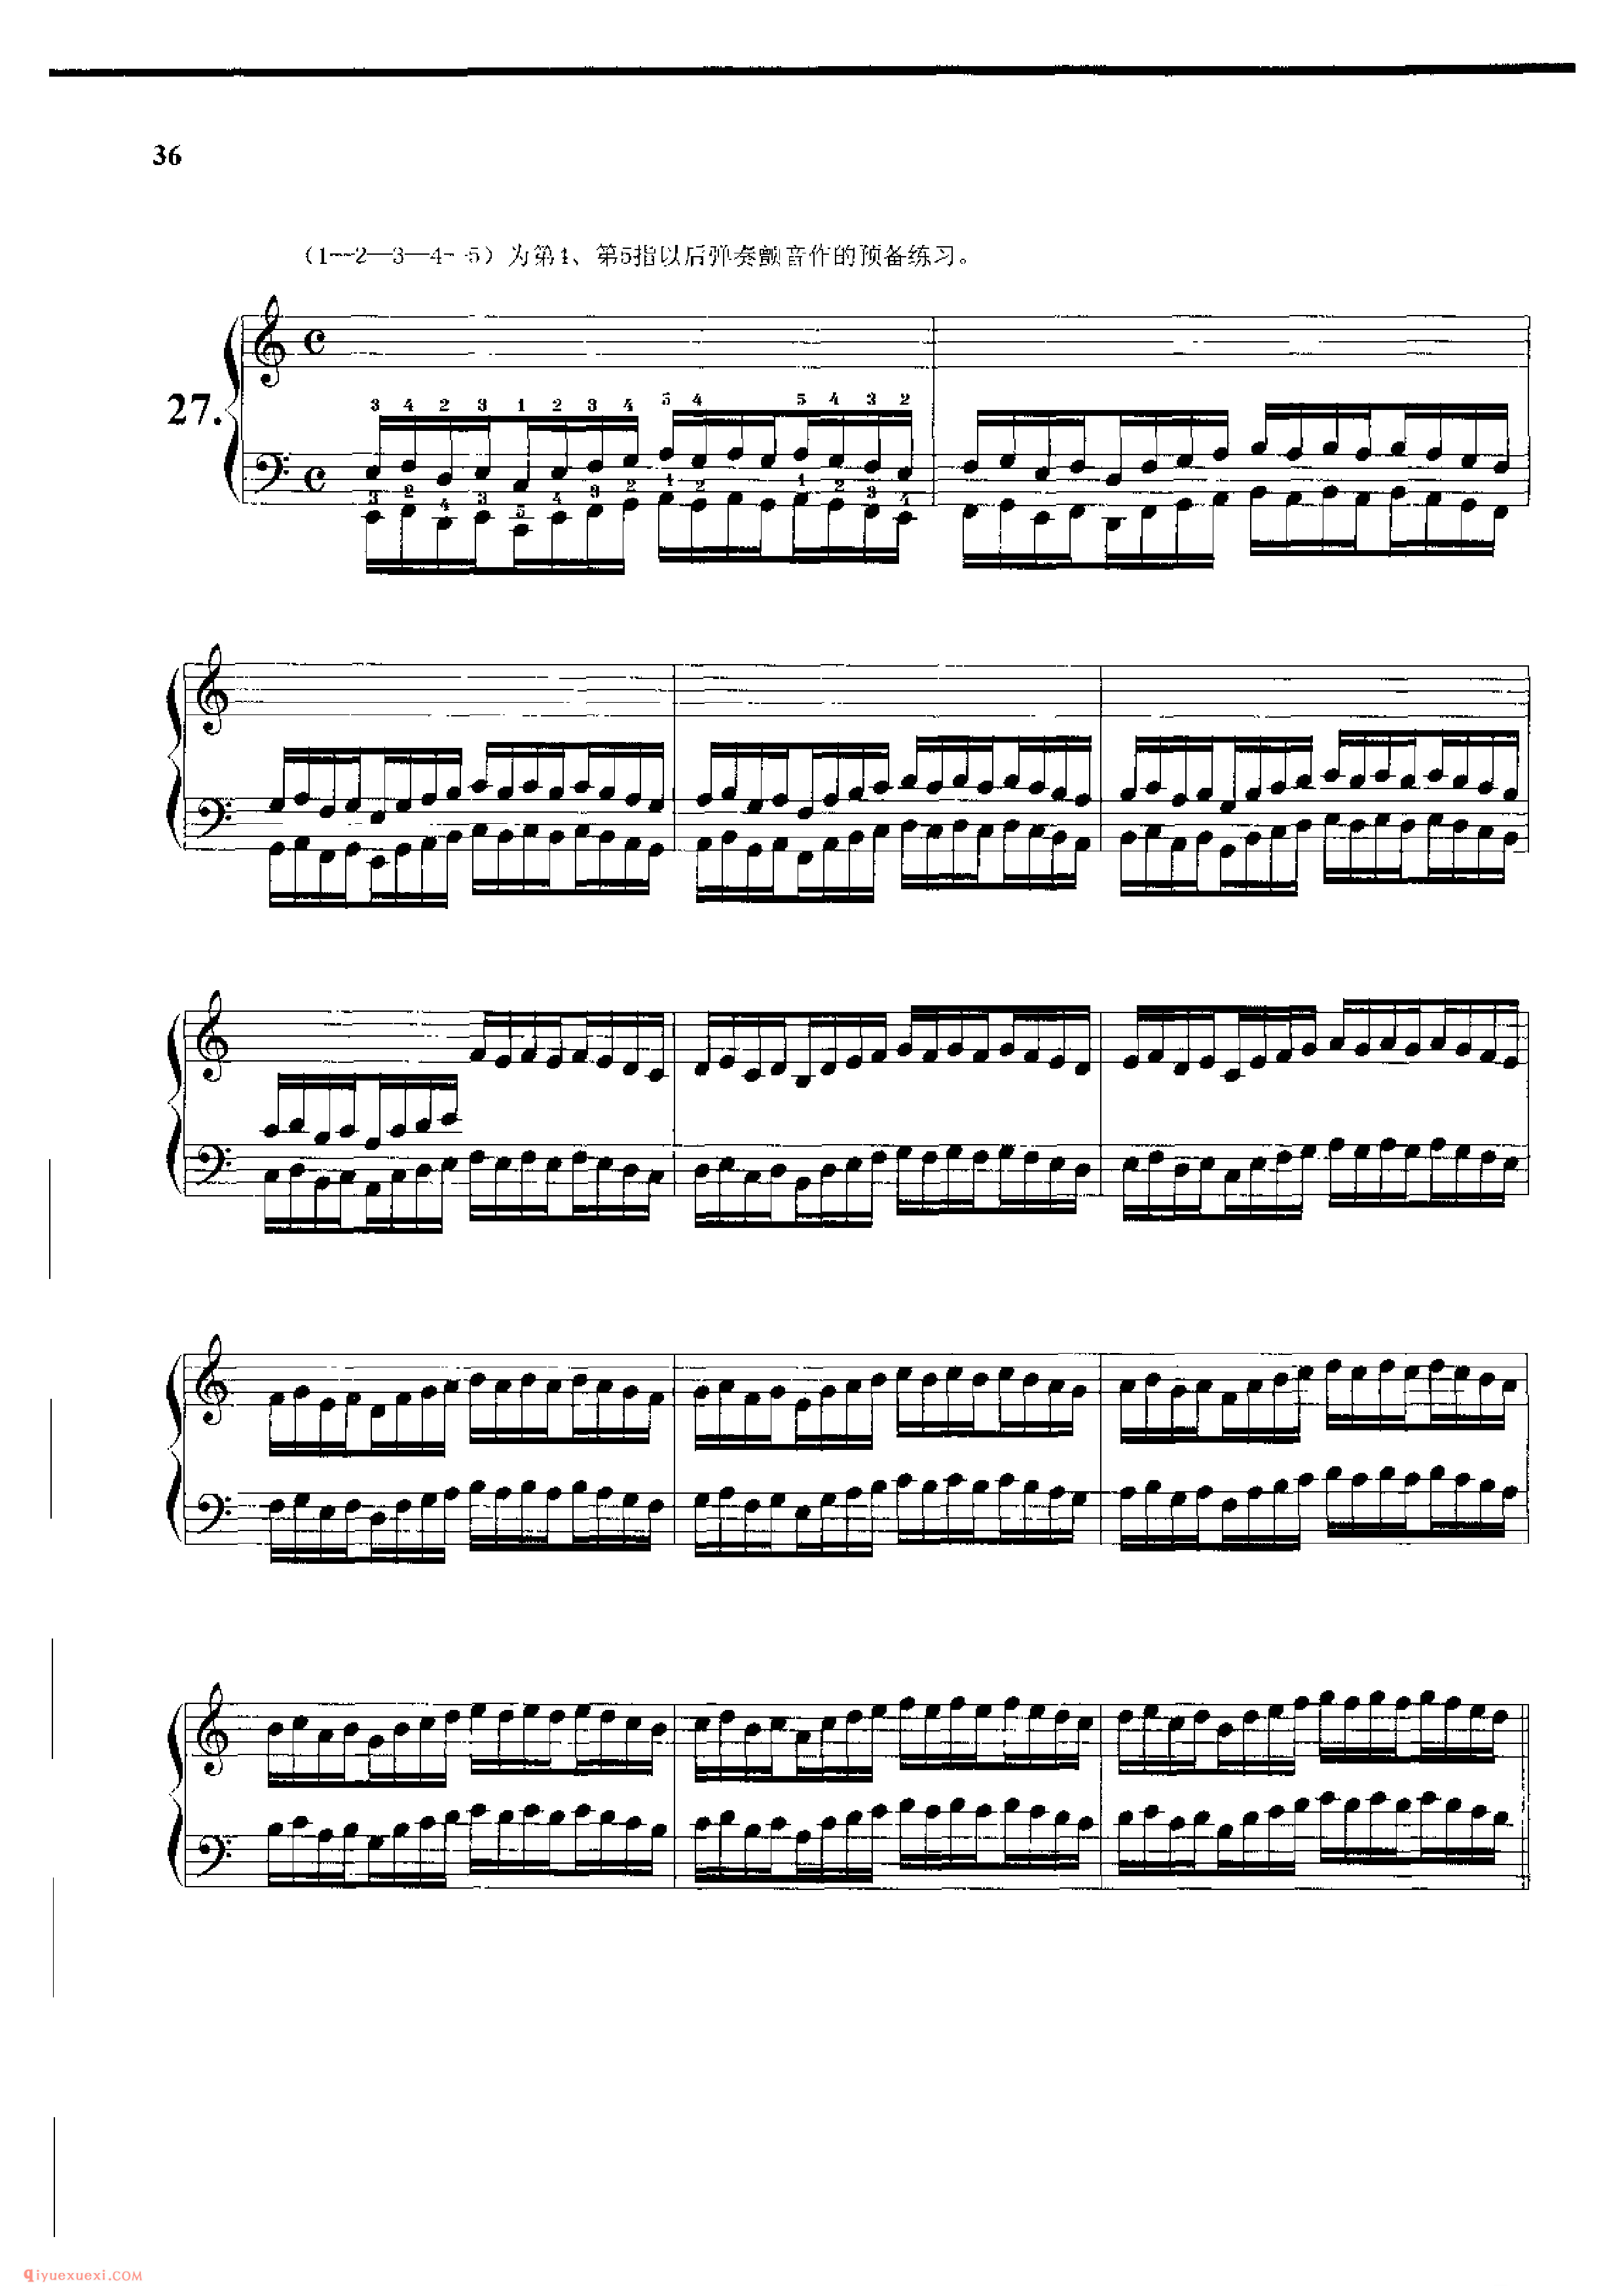 哈农钢琴练指法附十二调的和弦_汤元龙